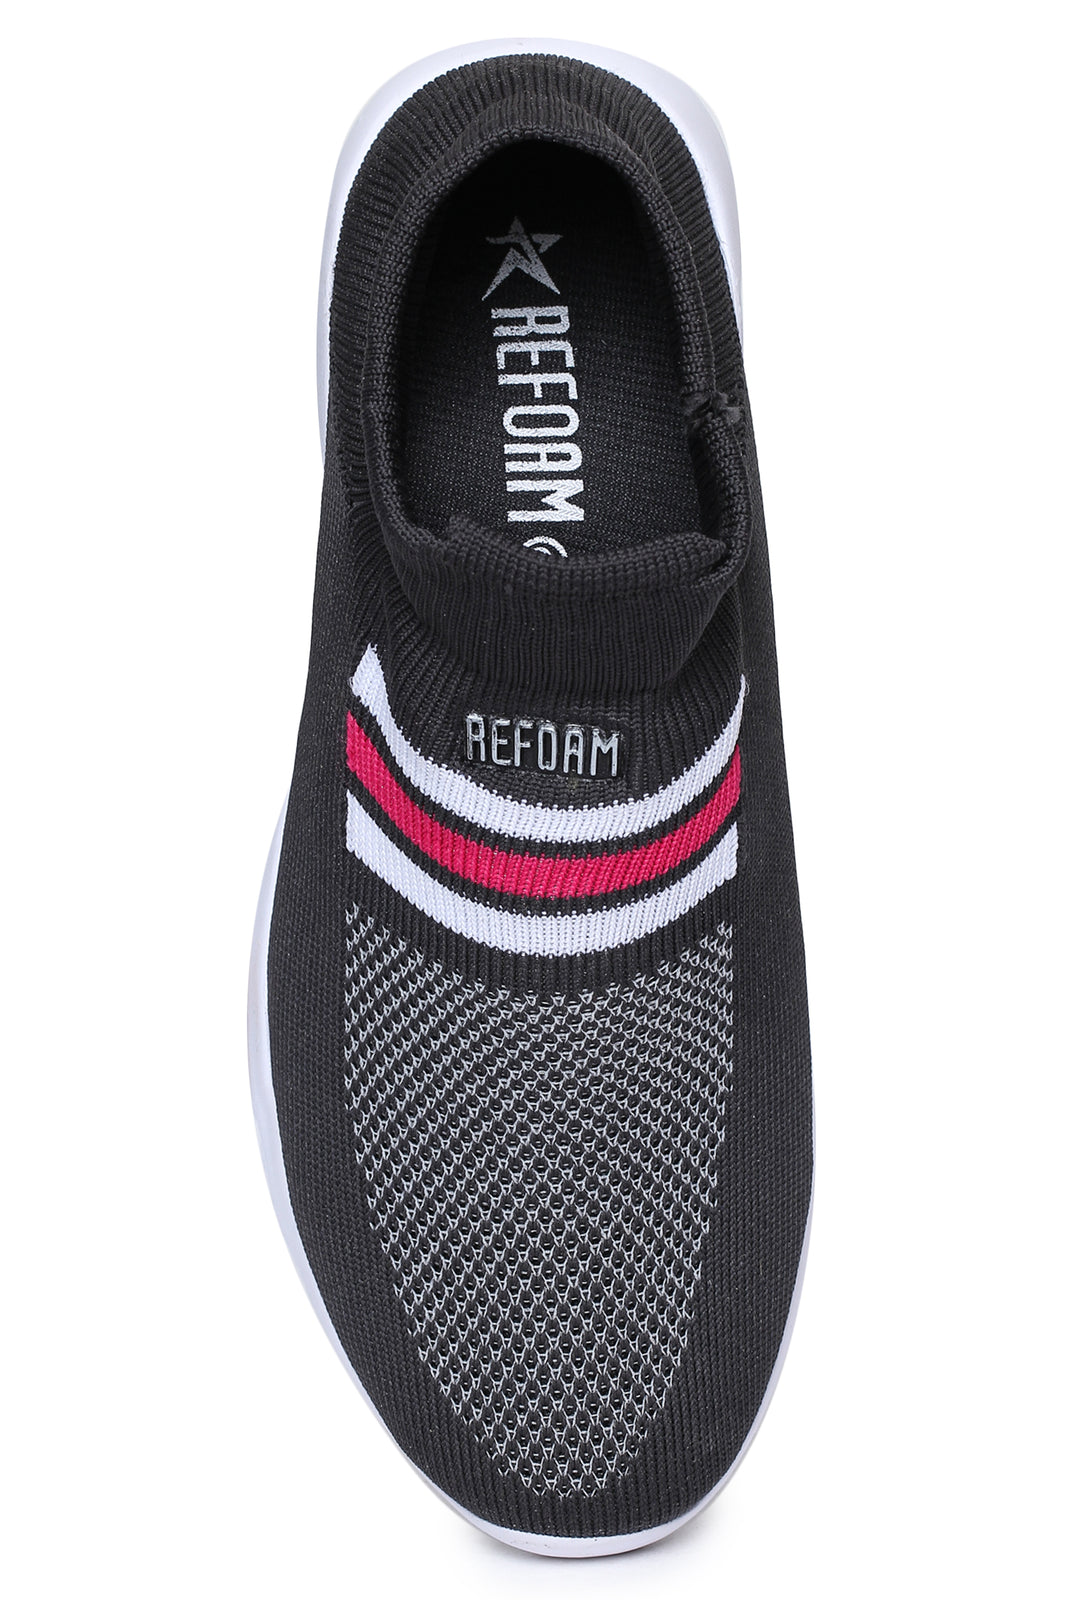 Black Solid Mesh Slip On Running Sport Shoes For Women